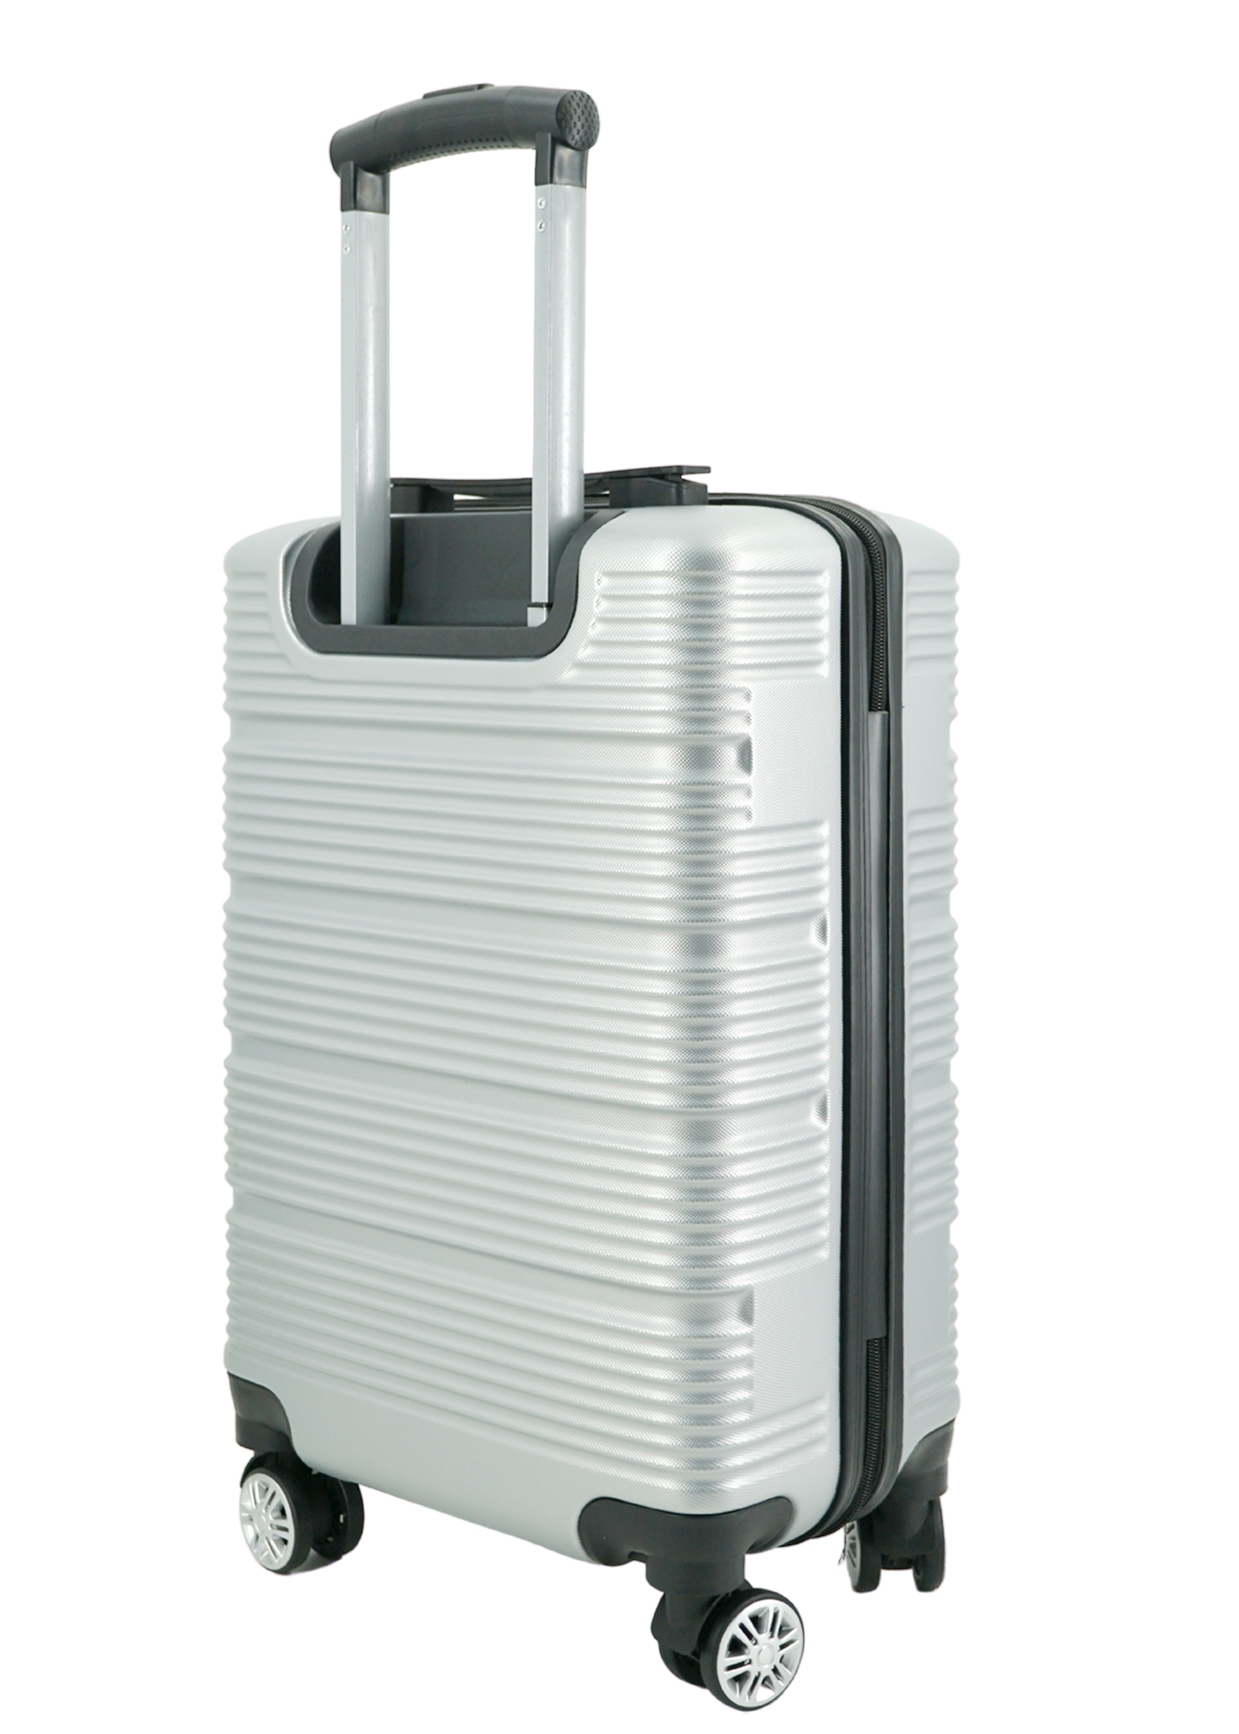 Vali kéo i'mmaX X13 size 24inch ký gửi hành lý nhựa PC/ABS - Bảo hành 3 năm